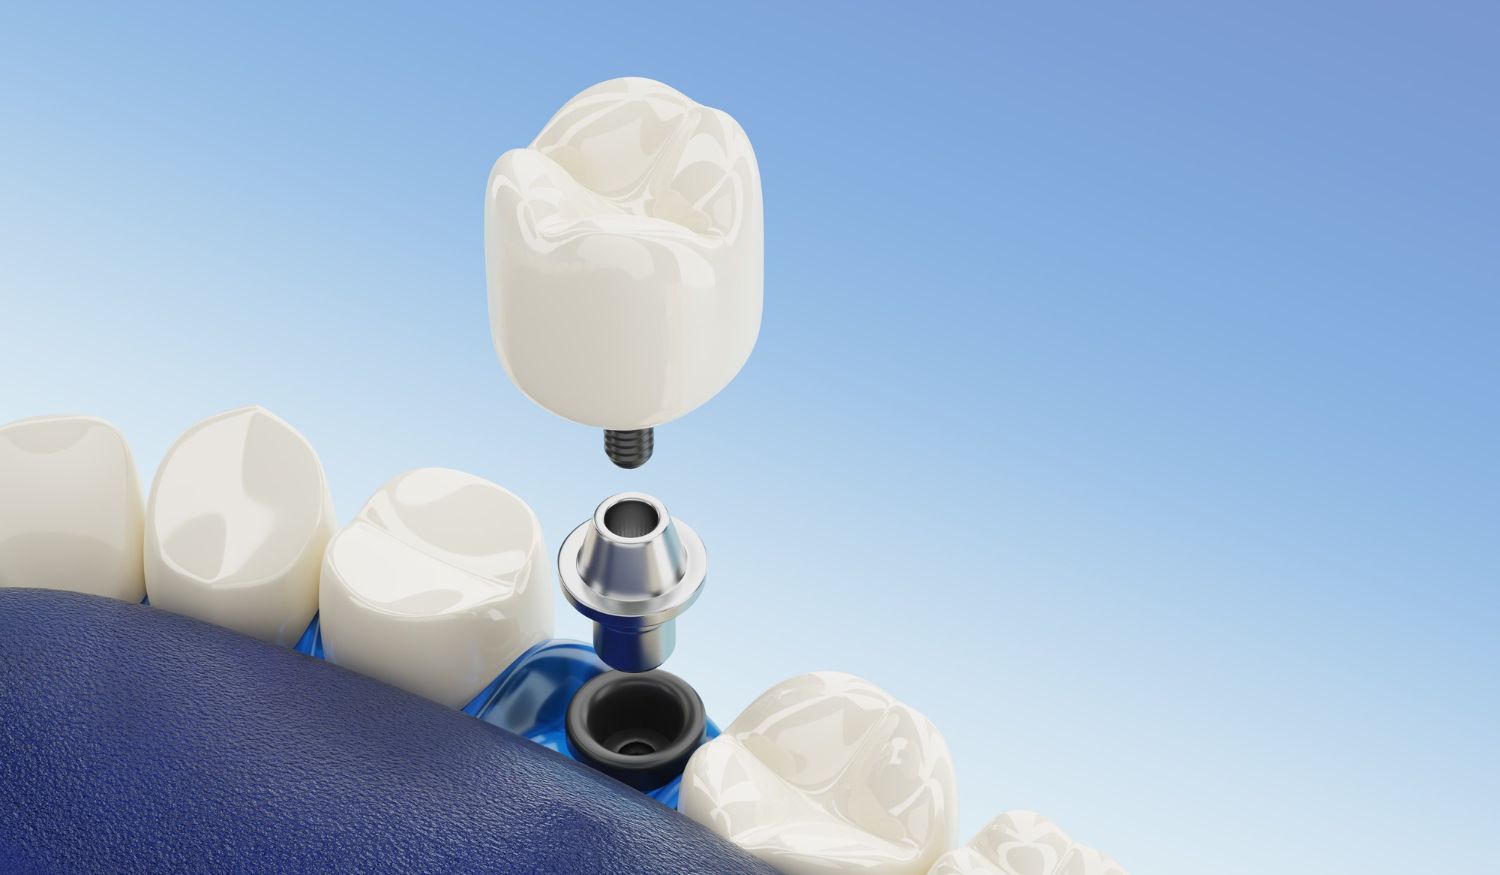 Colocarse implantes dentales en Vigo es una excelente solución para reponer los dientes perdidos